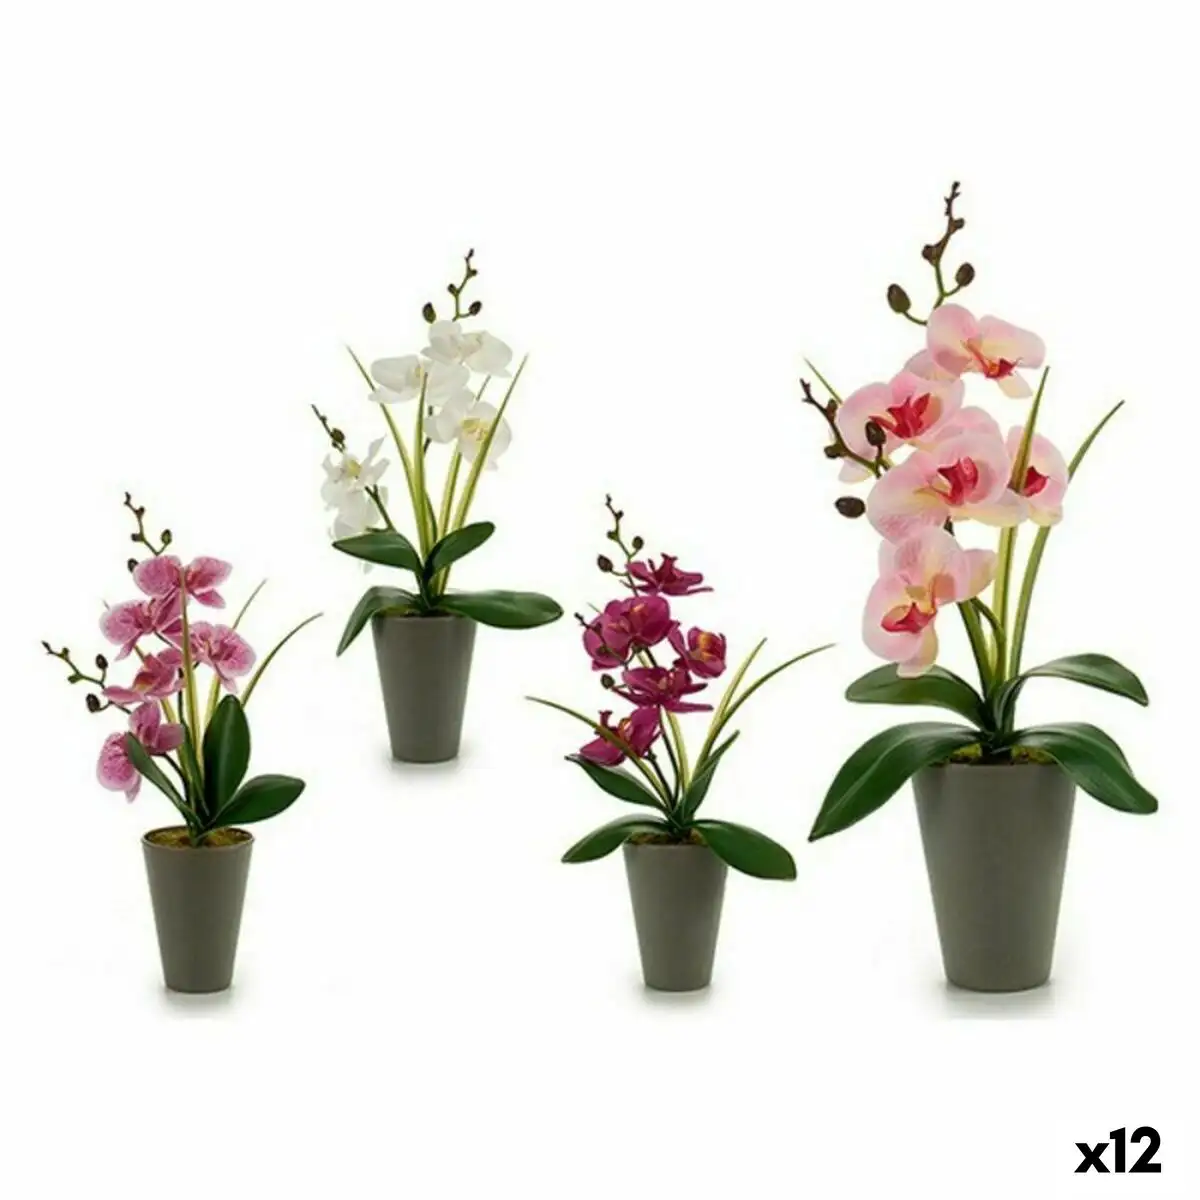 Plante decorative orchidee plastique 8 x 35 x 14 cm 12 unites _6487. DIAYTAR SENEGAL - L'Art du Shopping Sublime. Naviguez à travers notre catalogue et choisissez parmi des produits qui ajoutent une touche raffinée à votre vie quotidienne.